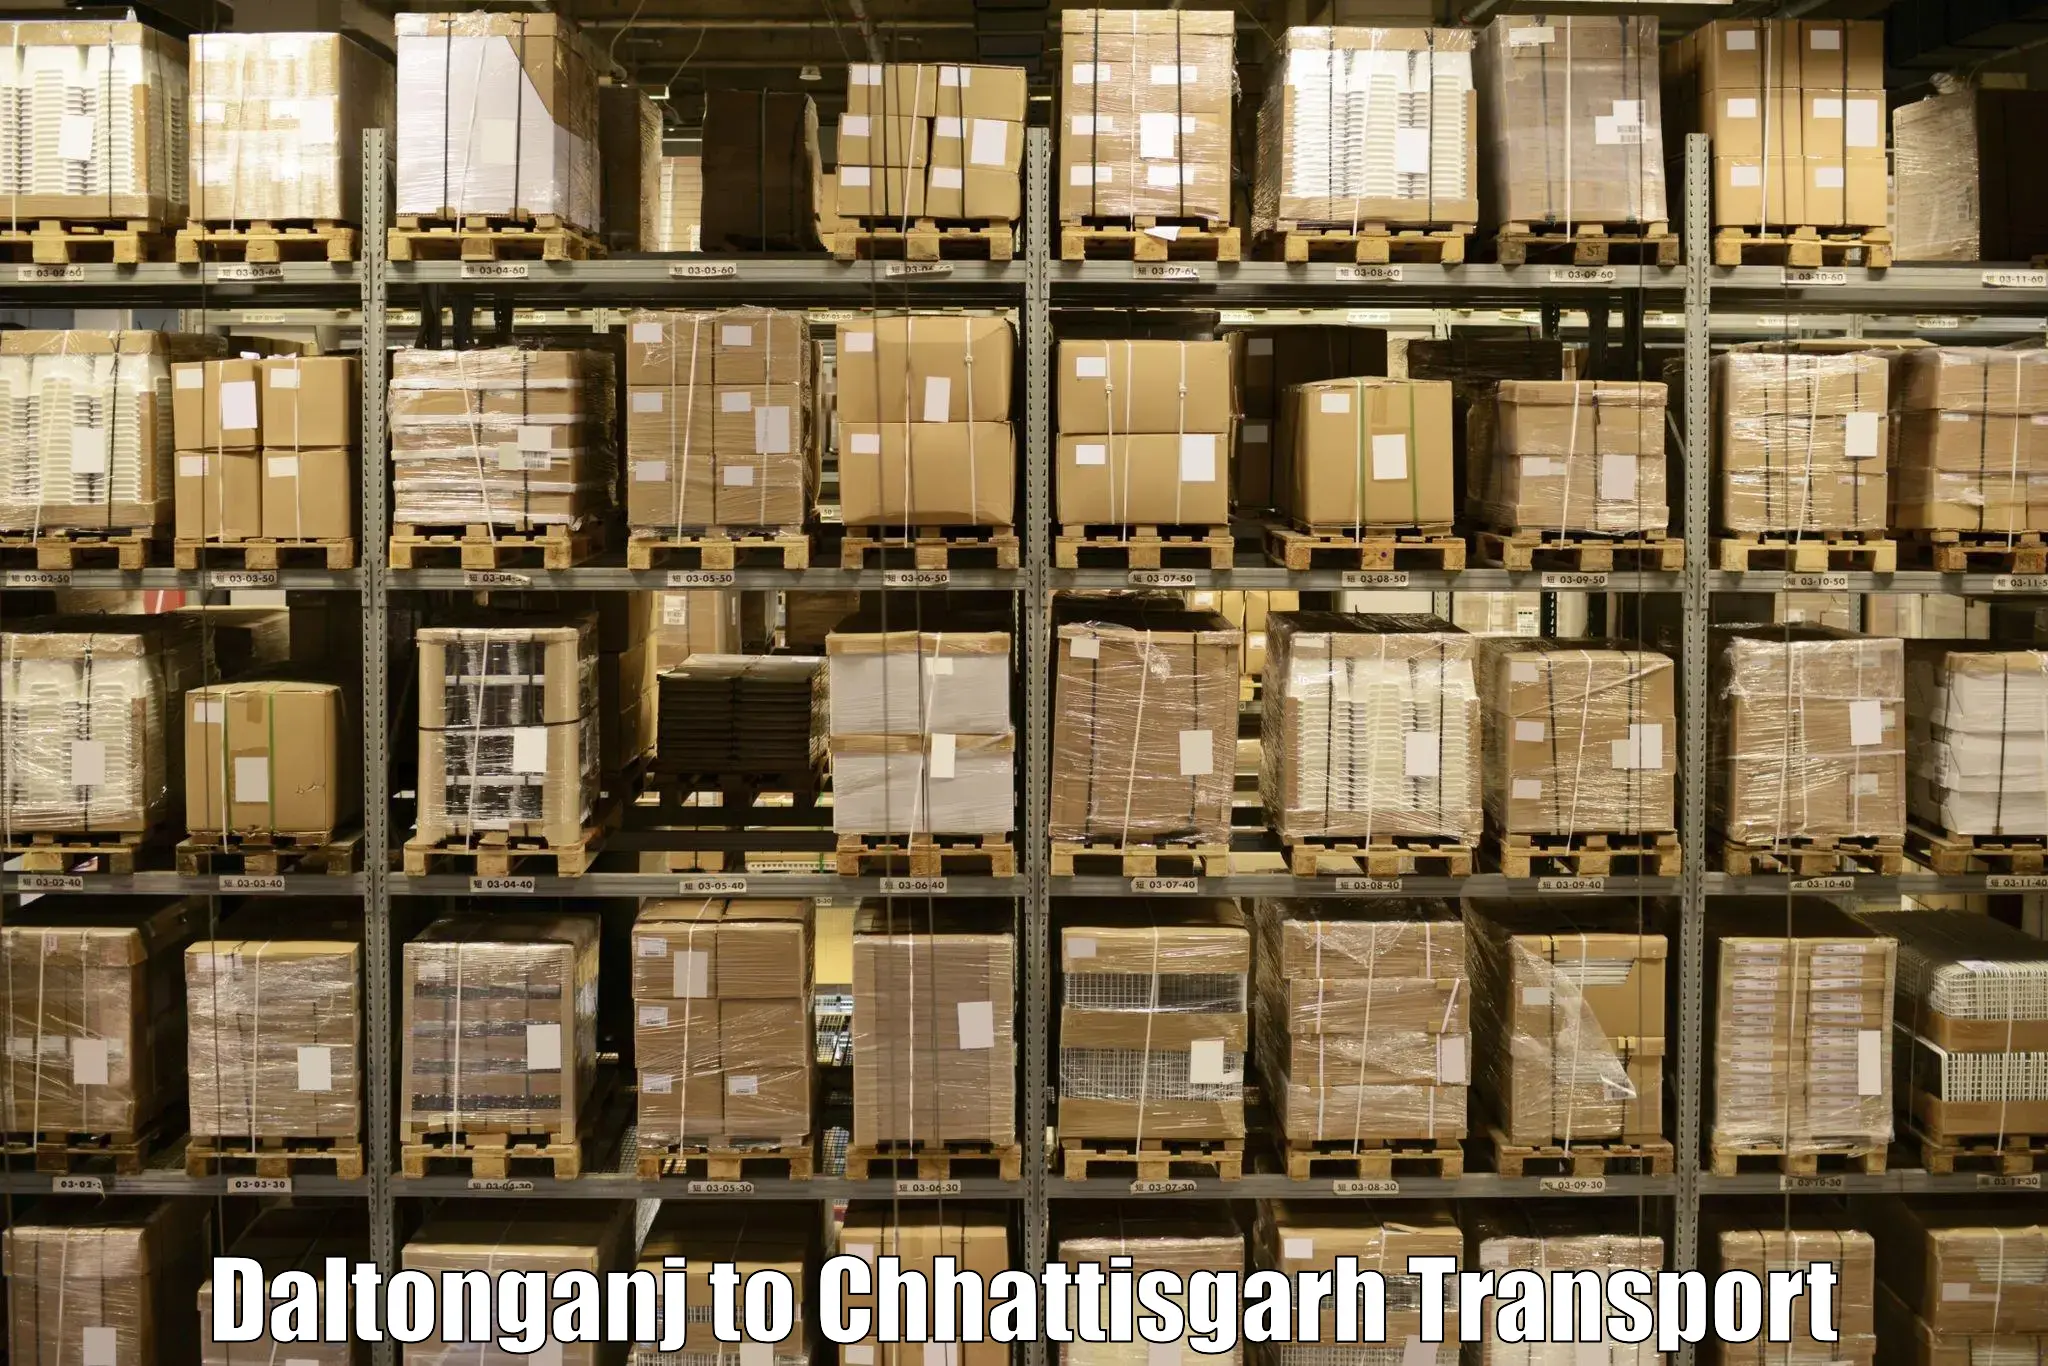 Daily parcel service transport Daltonganj to Dhamtari